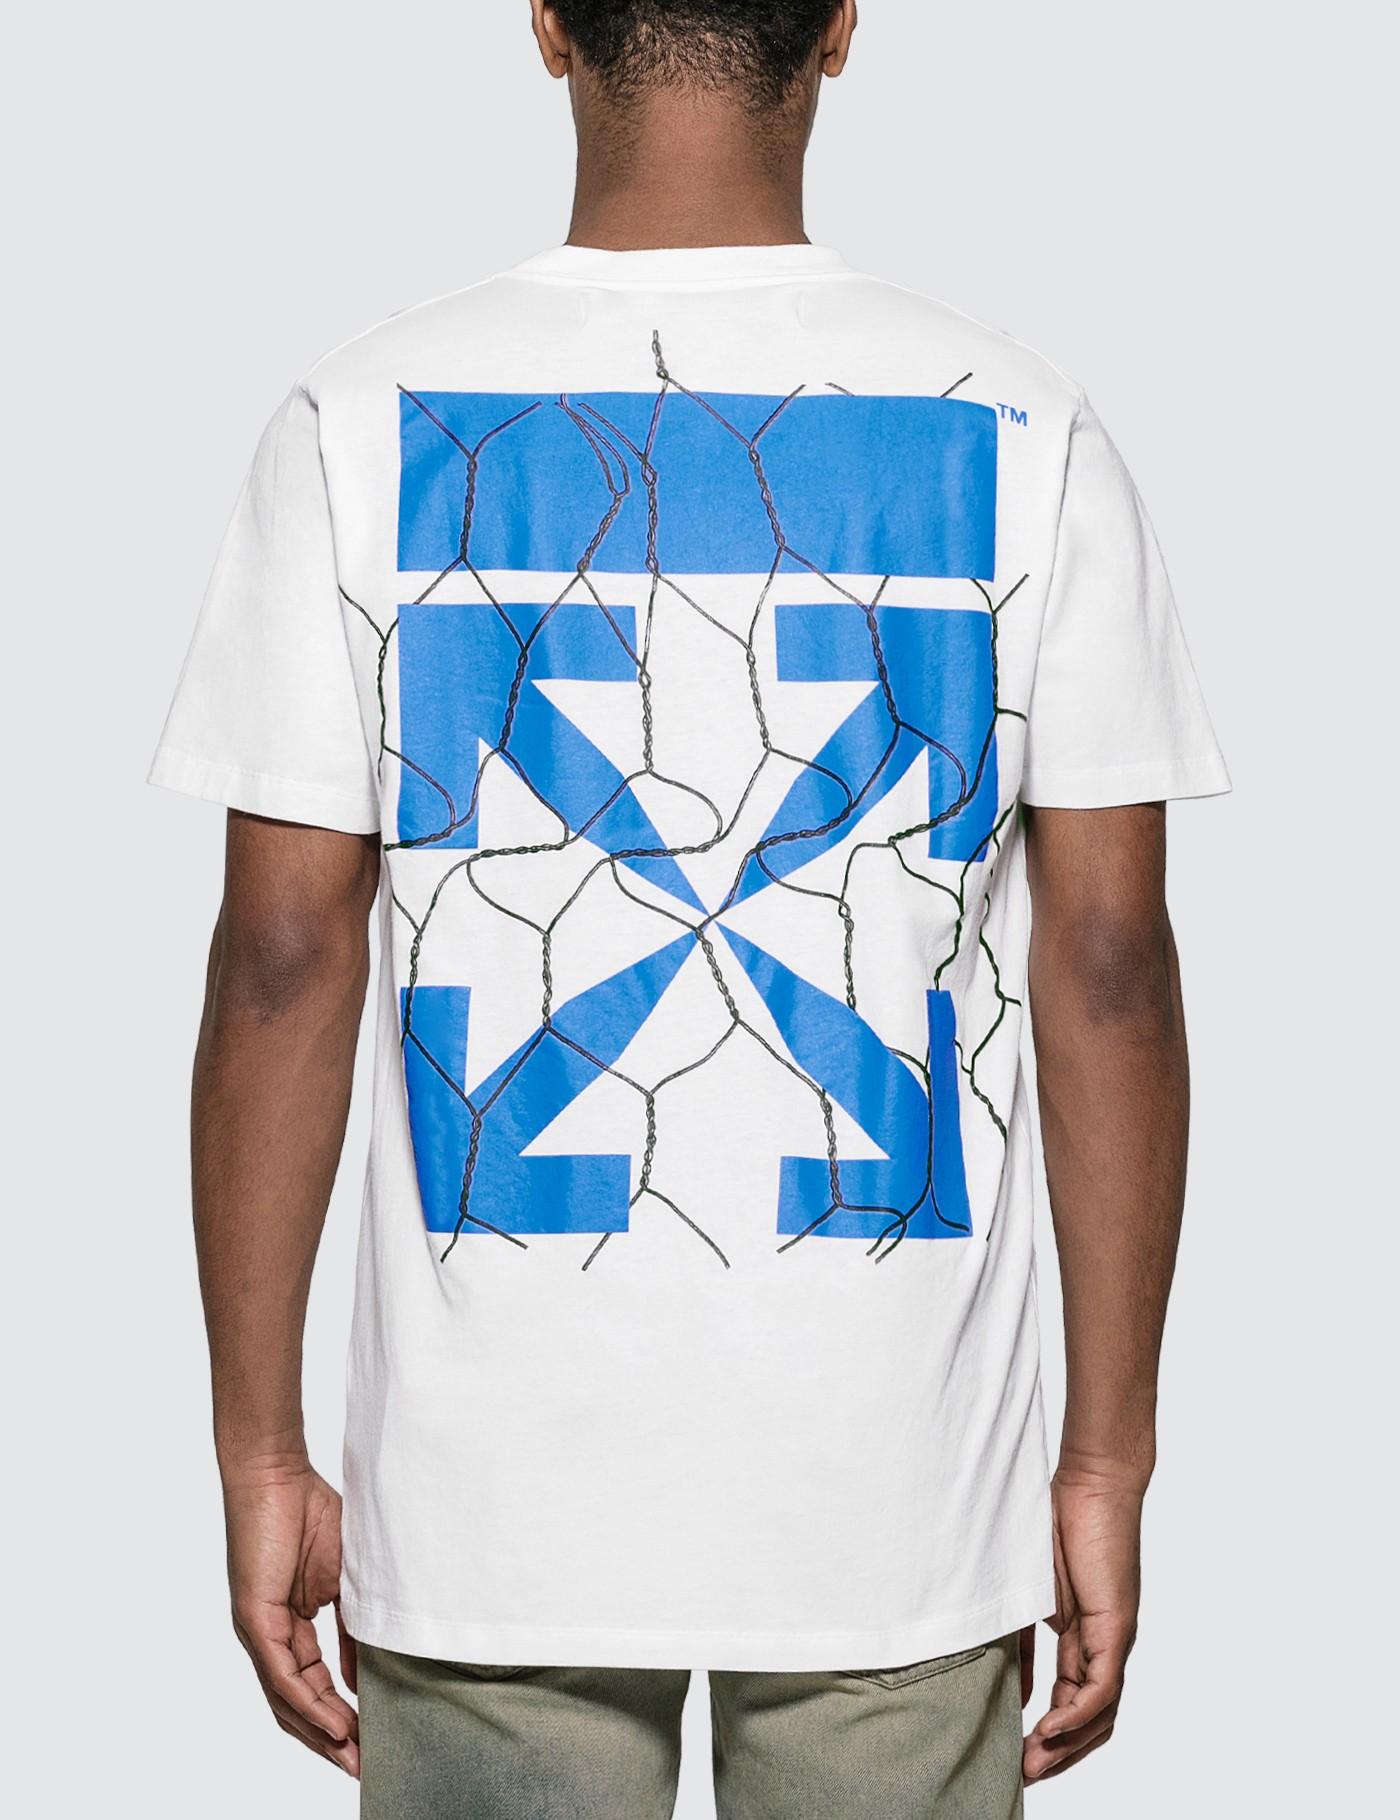 Off-White c/o Virgil Abloh Fence Arrows T-shirt in White for Men - Lyst